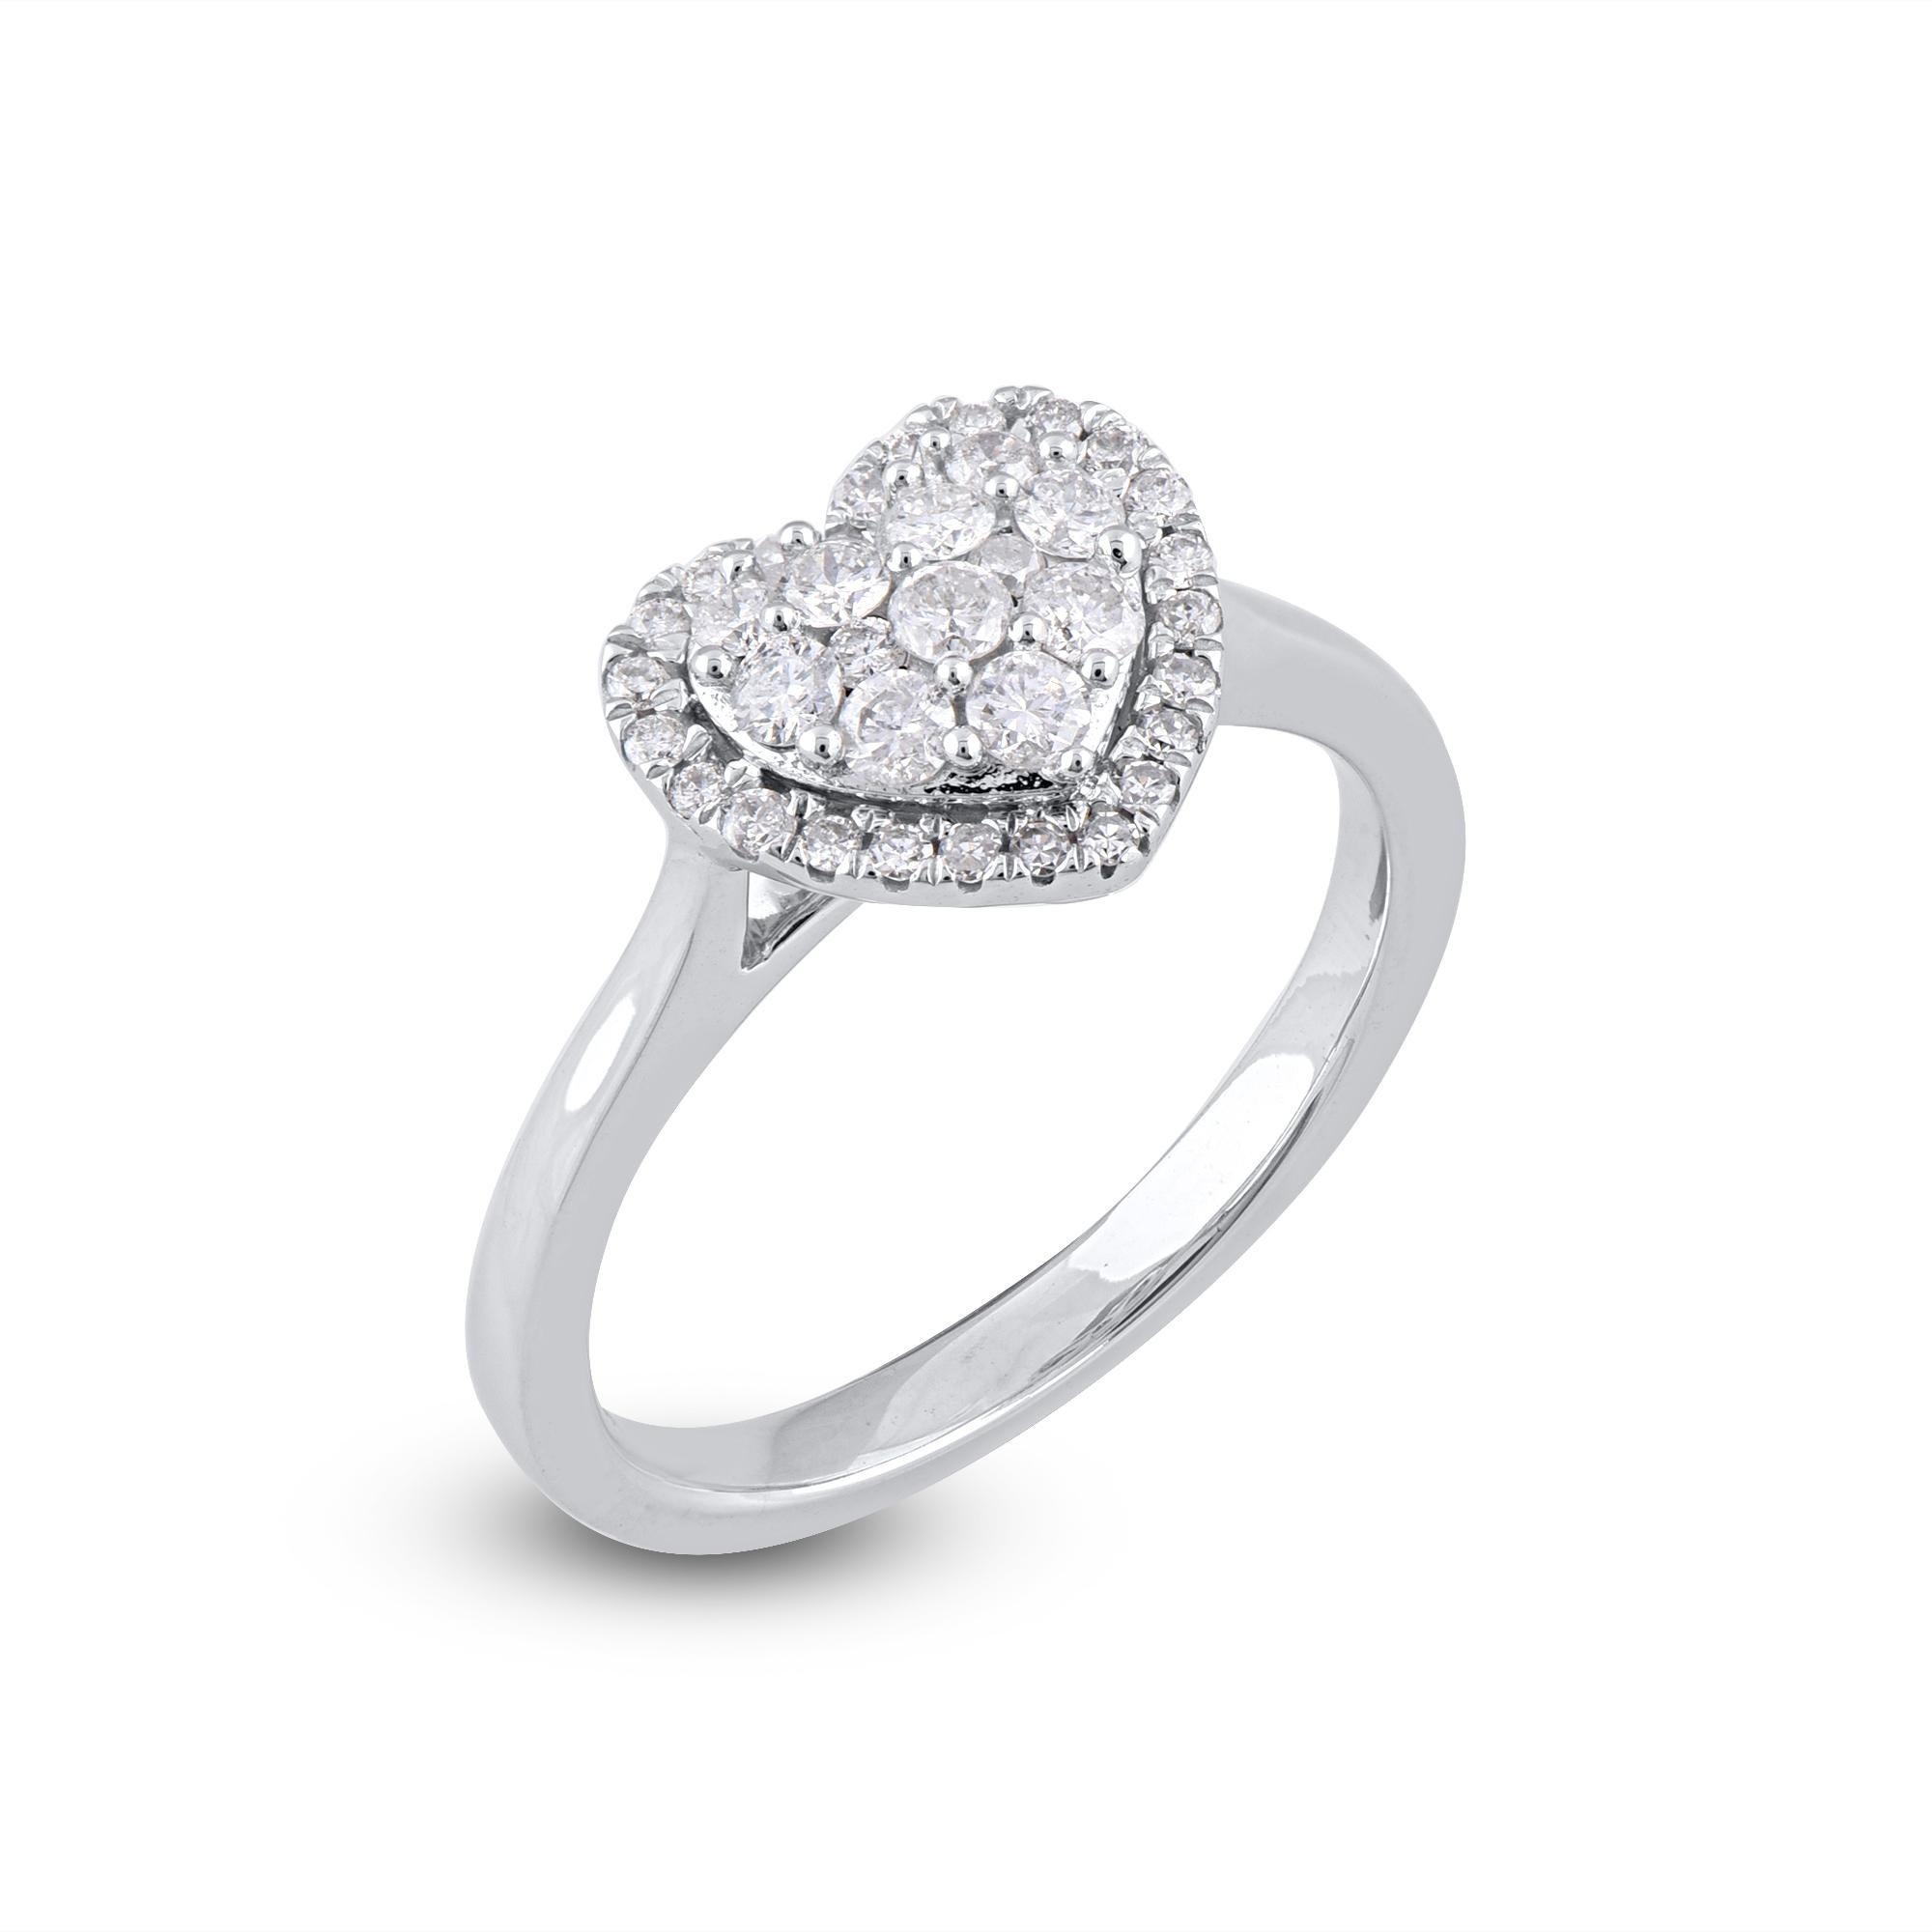 Gewinnen Sie ihr Herz mit diesem klassischen und eleganten Diamantherzring. Diese Diamantringe sind mit 36 runden Diamanten im Einzel- und Brillantschliff in Zacken- und Druckfassung besetzt und aus 14kt Weißgold gefertigt. Die weißen Diamanten sind